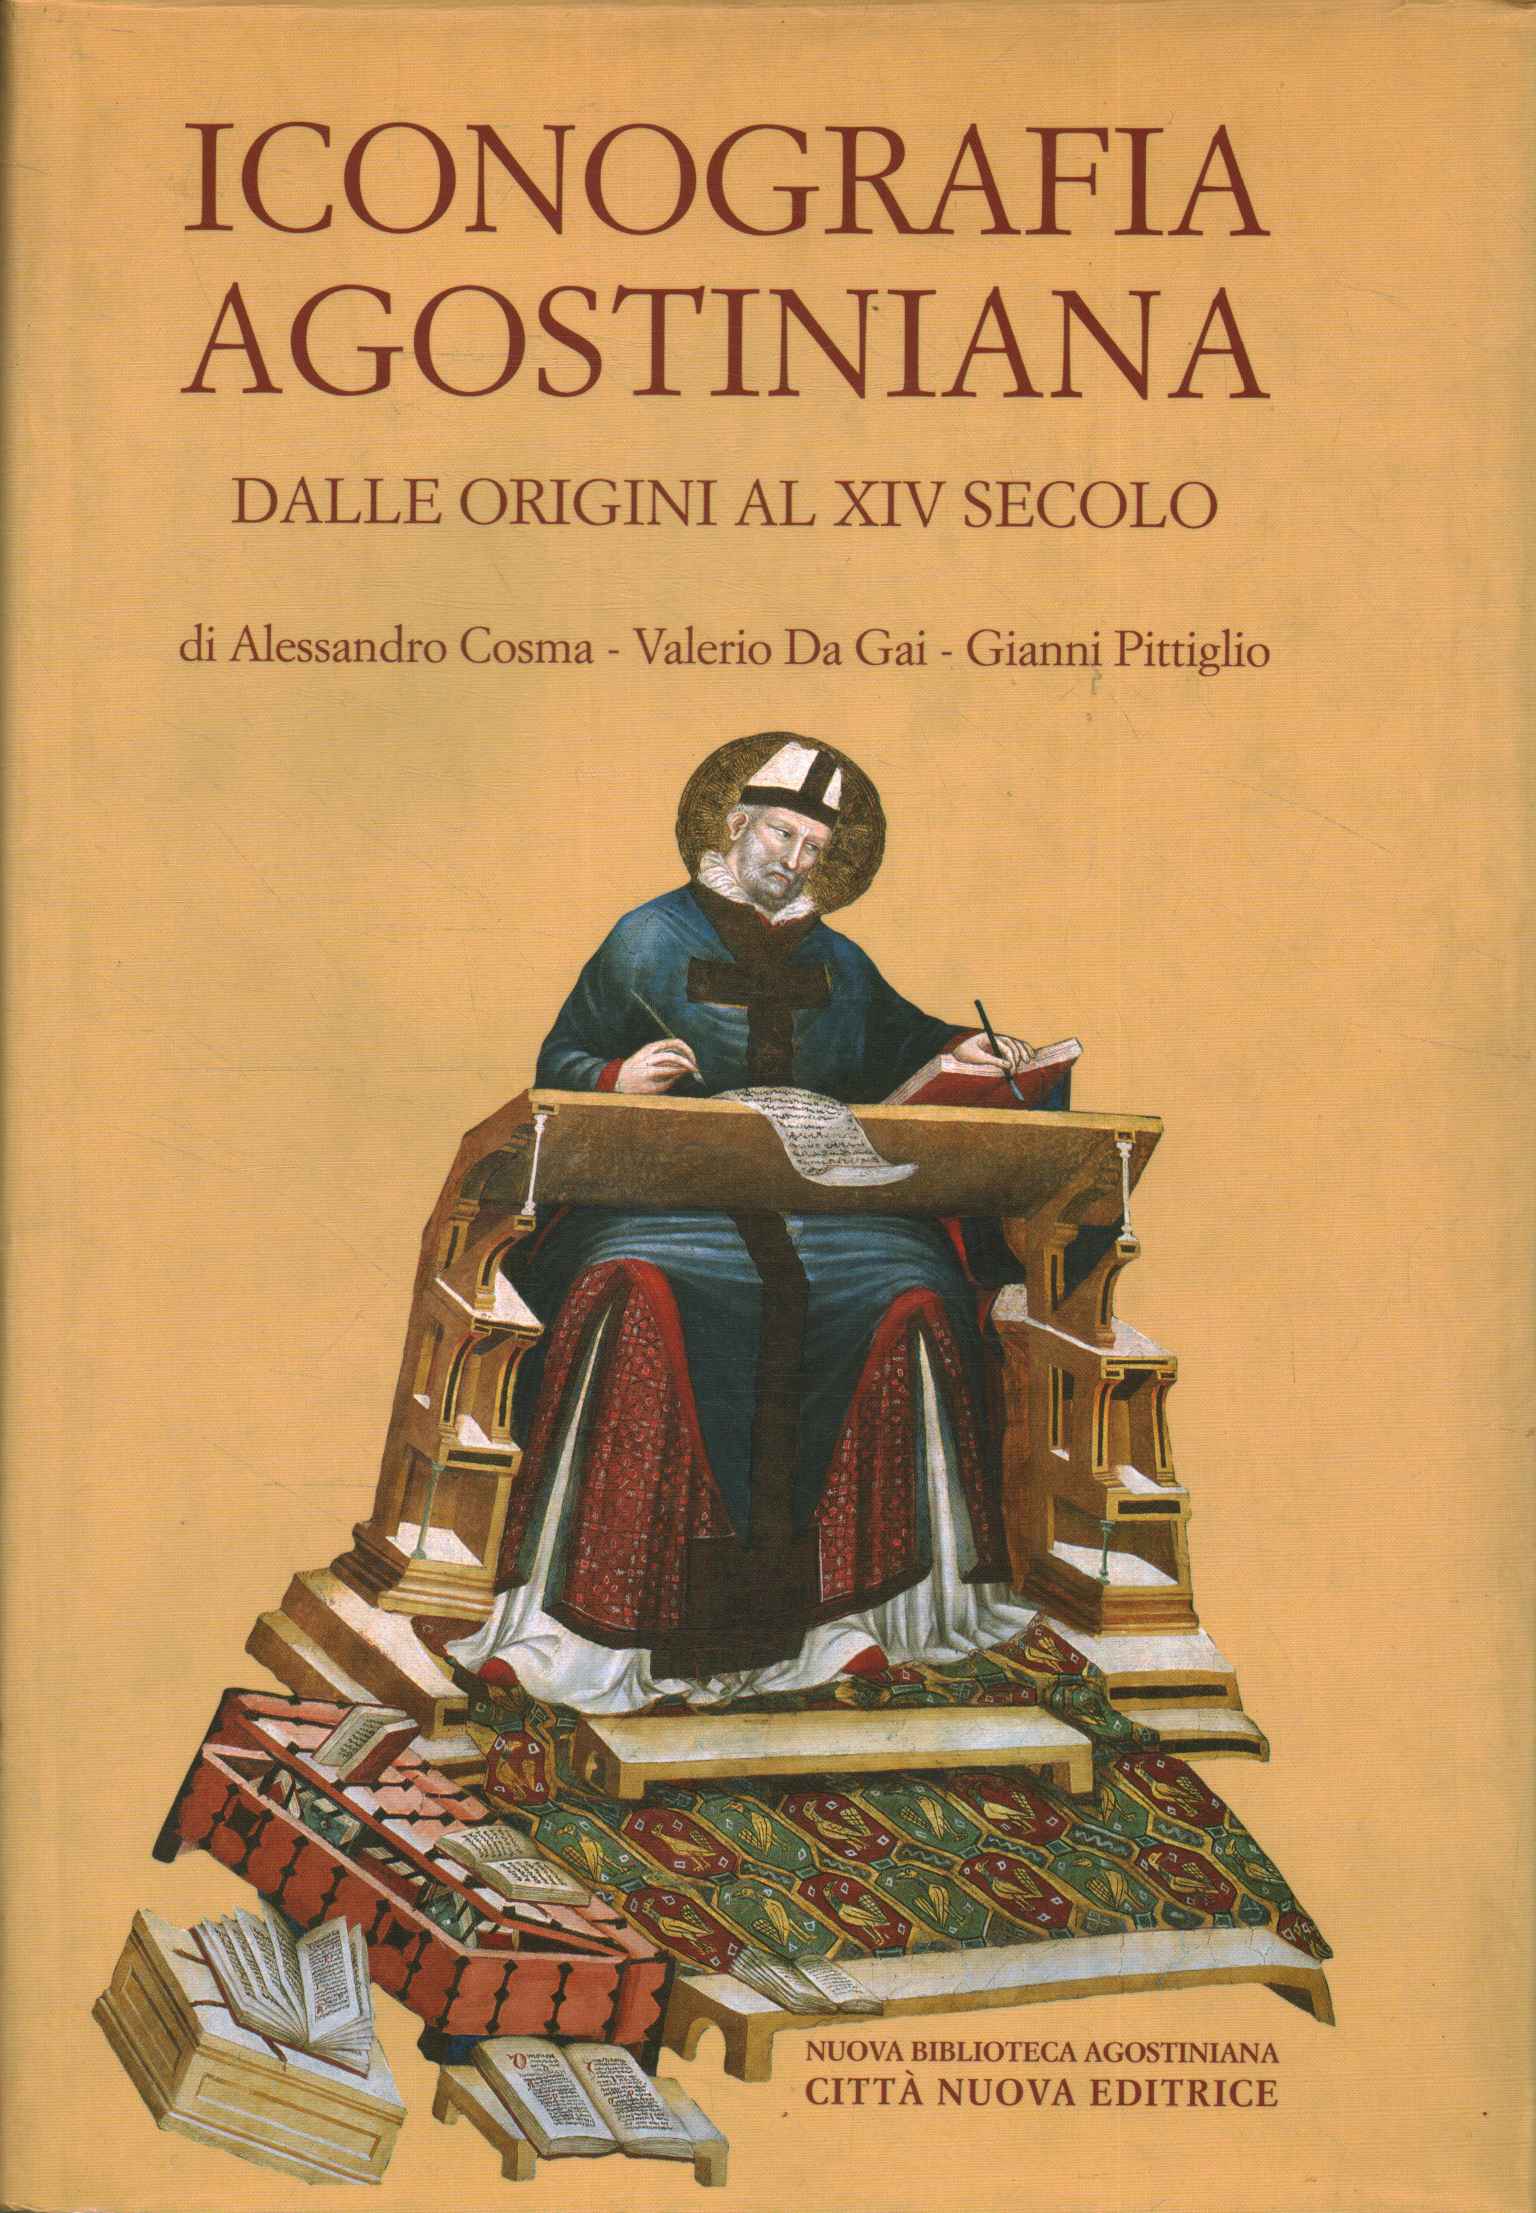 Iconografia agostiniana (Volume XVI Tomo%